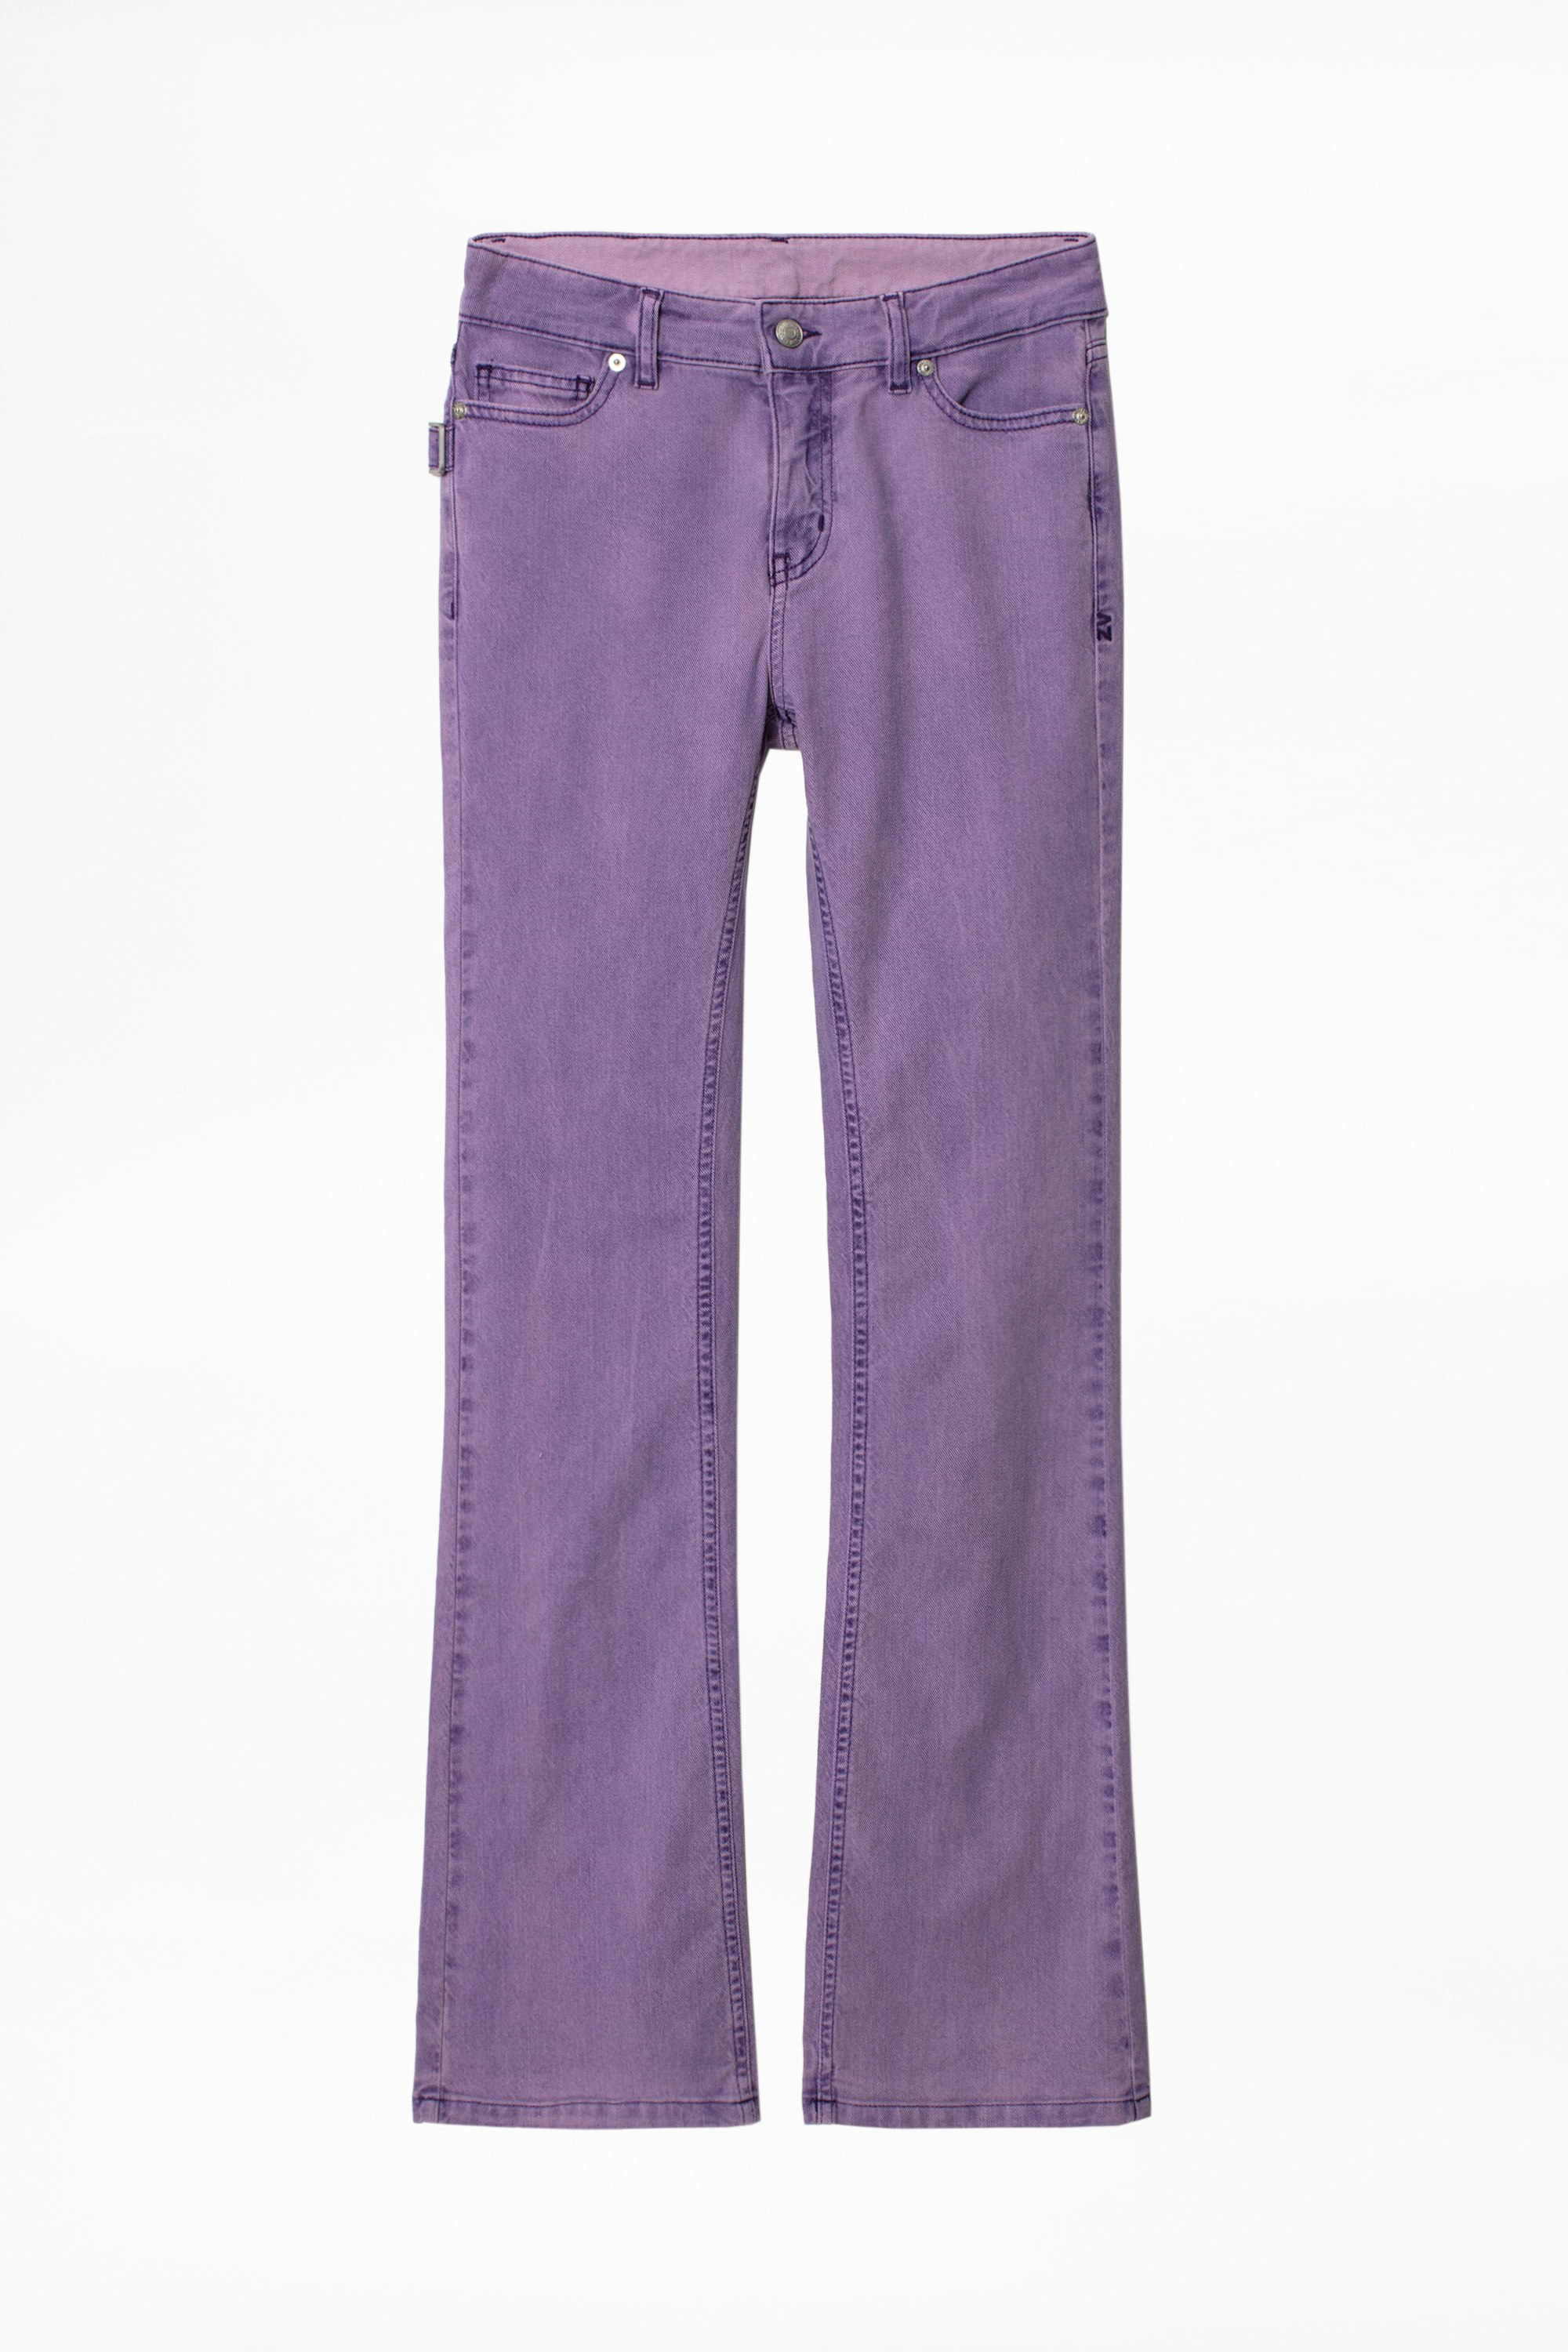 mauve colored jeans